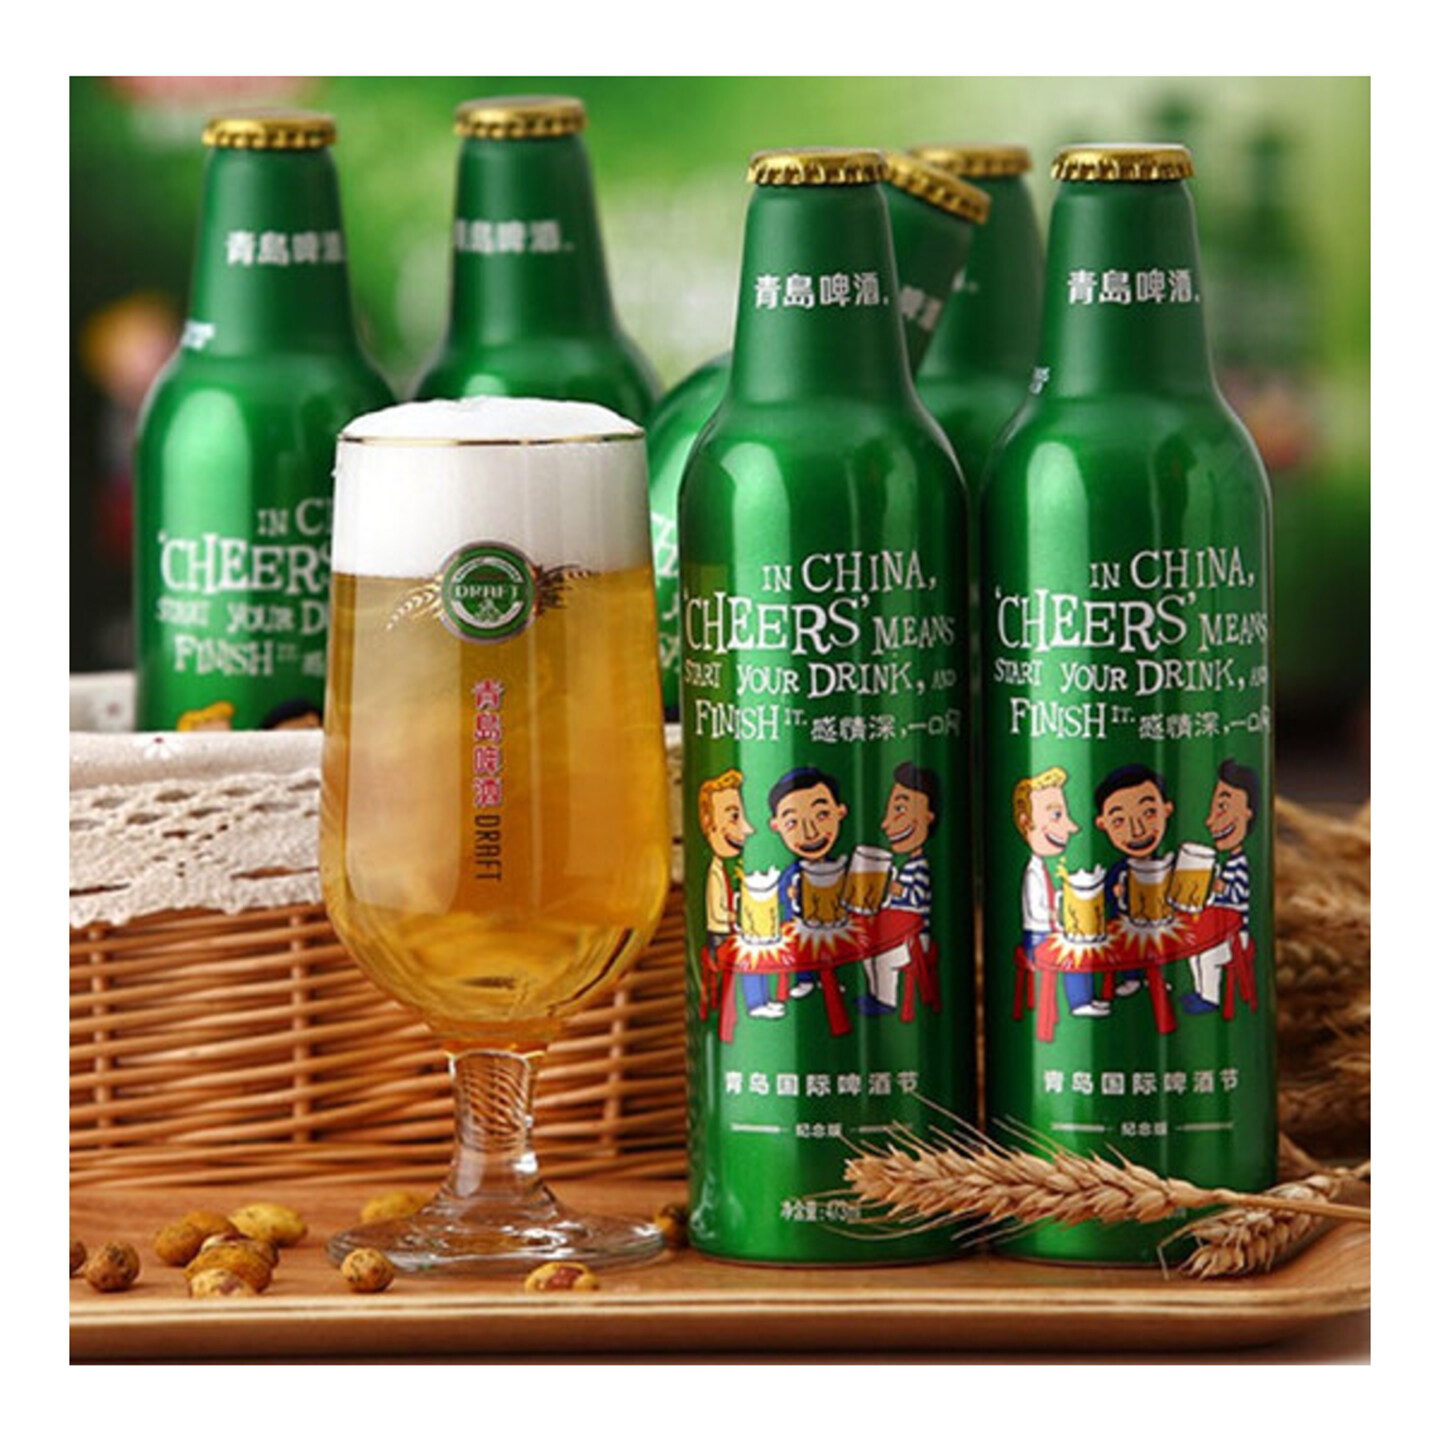 啤酒瓶型包装设计-青岛啤酒节定制包装设计